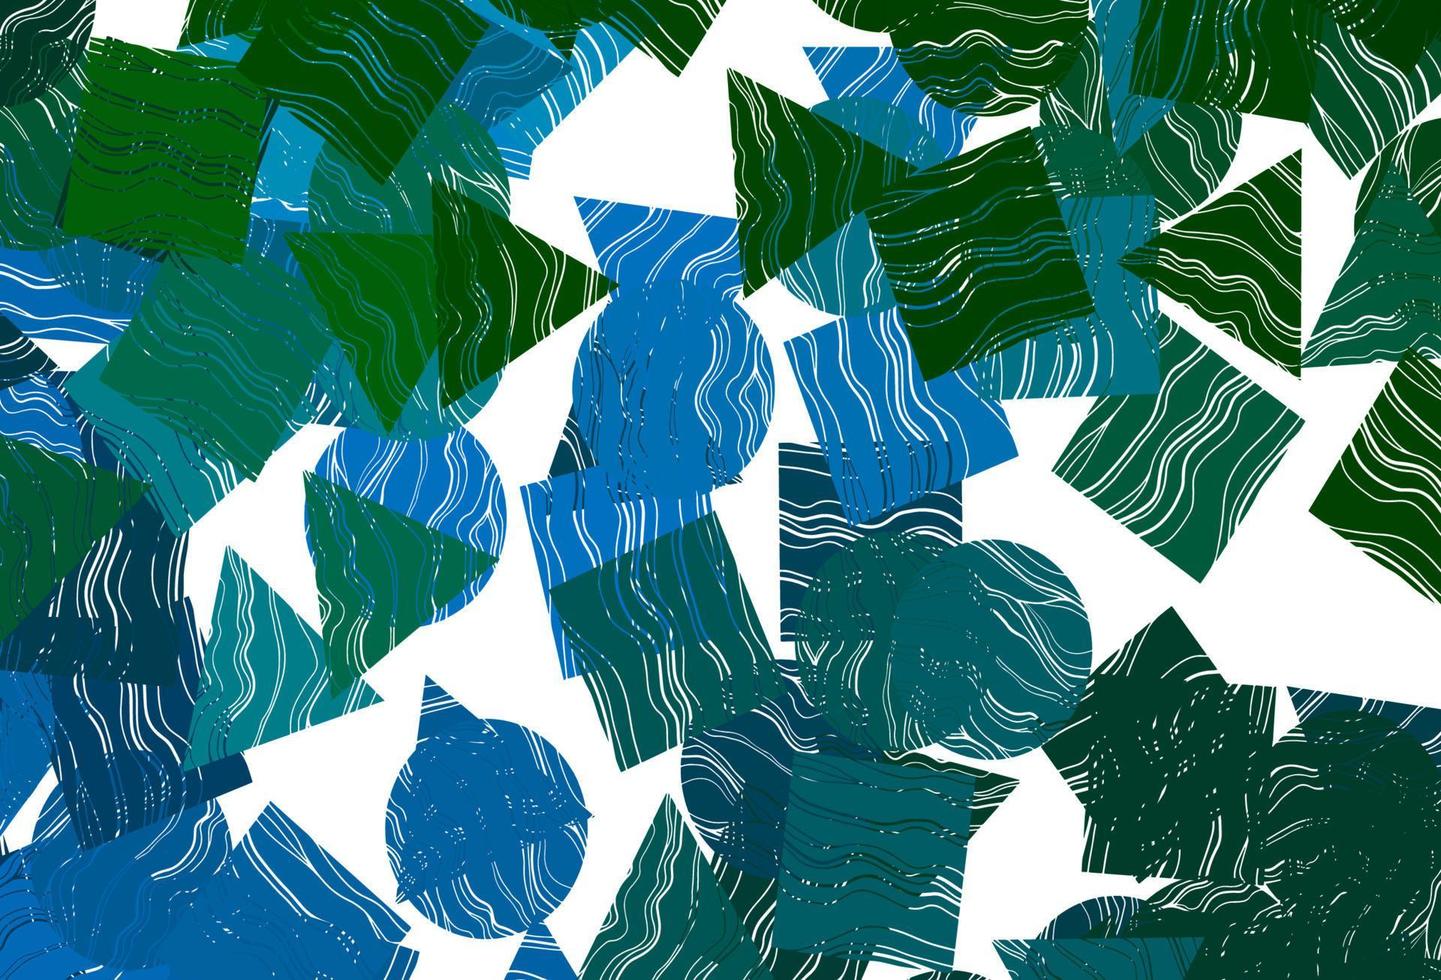 mise en page vectorielle bleu foncé, vert avec cercles, lignes, rectangles. vecteur